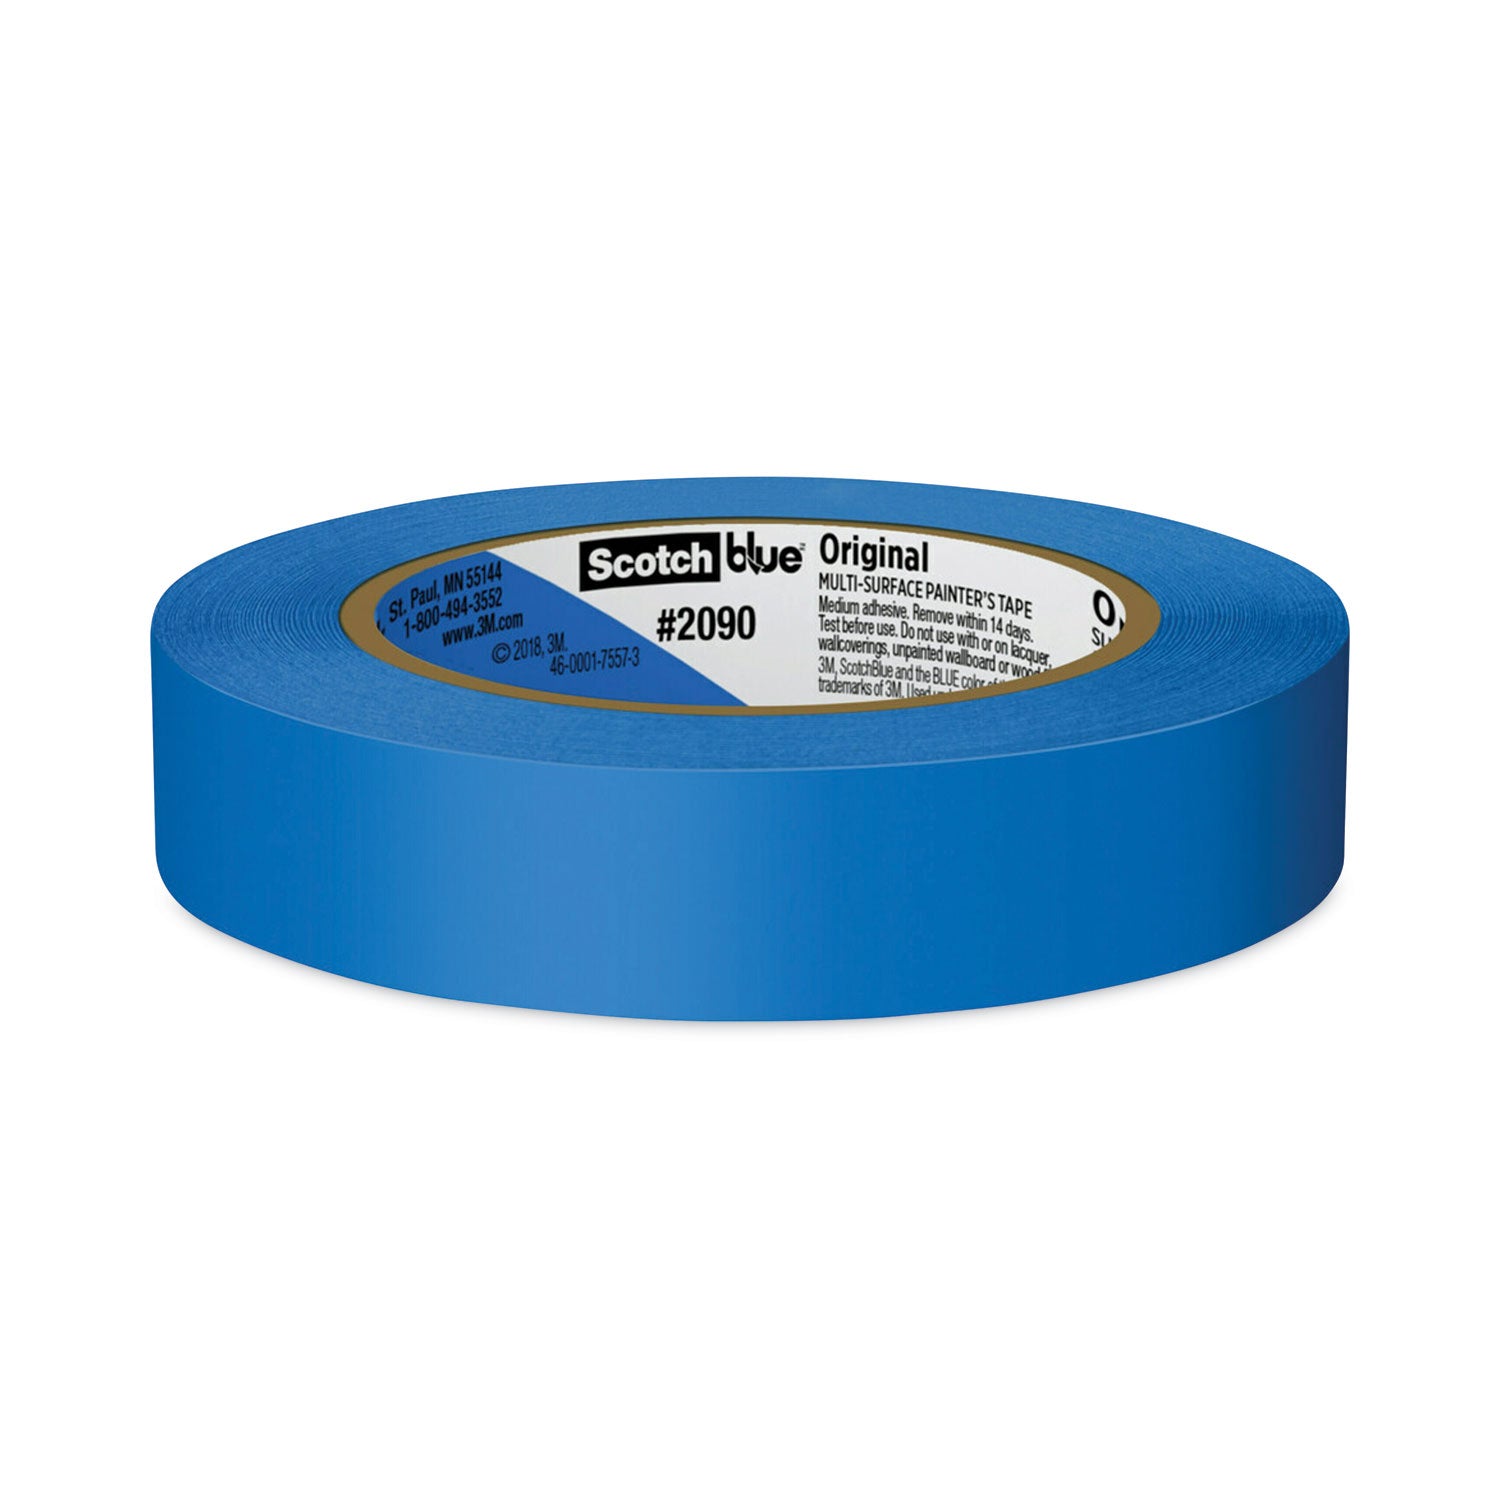 Original Multi-Surface Painter's Tape, 3" Core, 0.94" x 60 yds, Blue - 